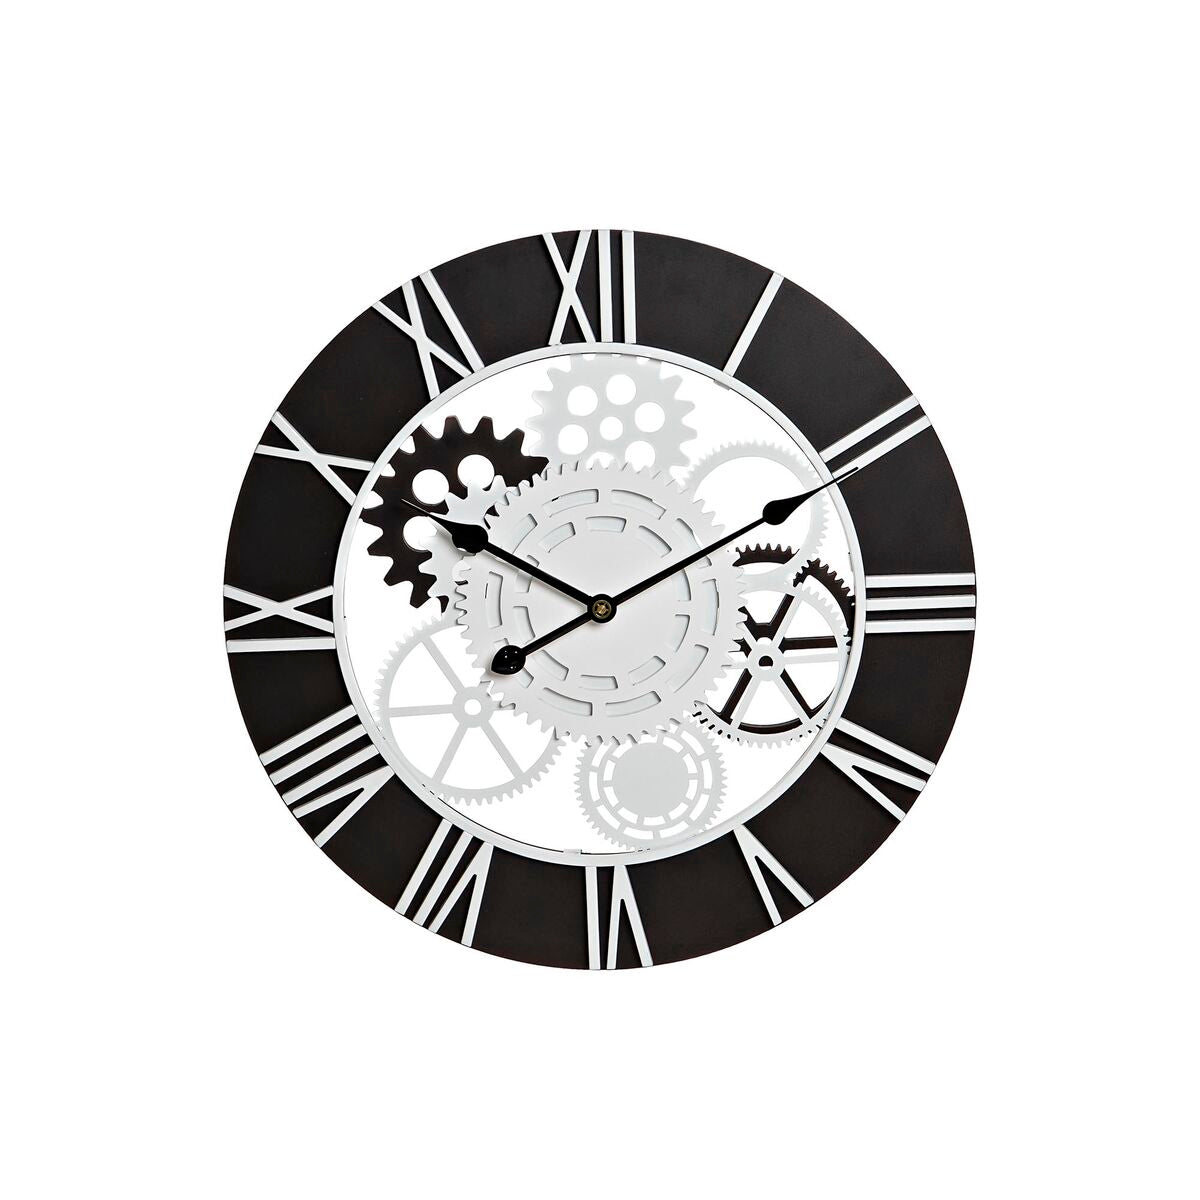 Horloge Murale Design Industriel Loft Home Decor Bois Noir Blanc Fer Engrenage (60 x 4 x 60 cm)